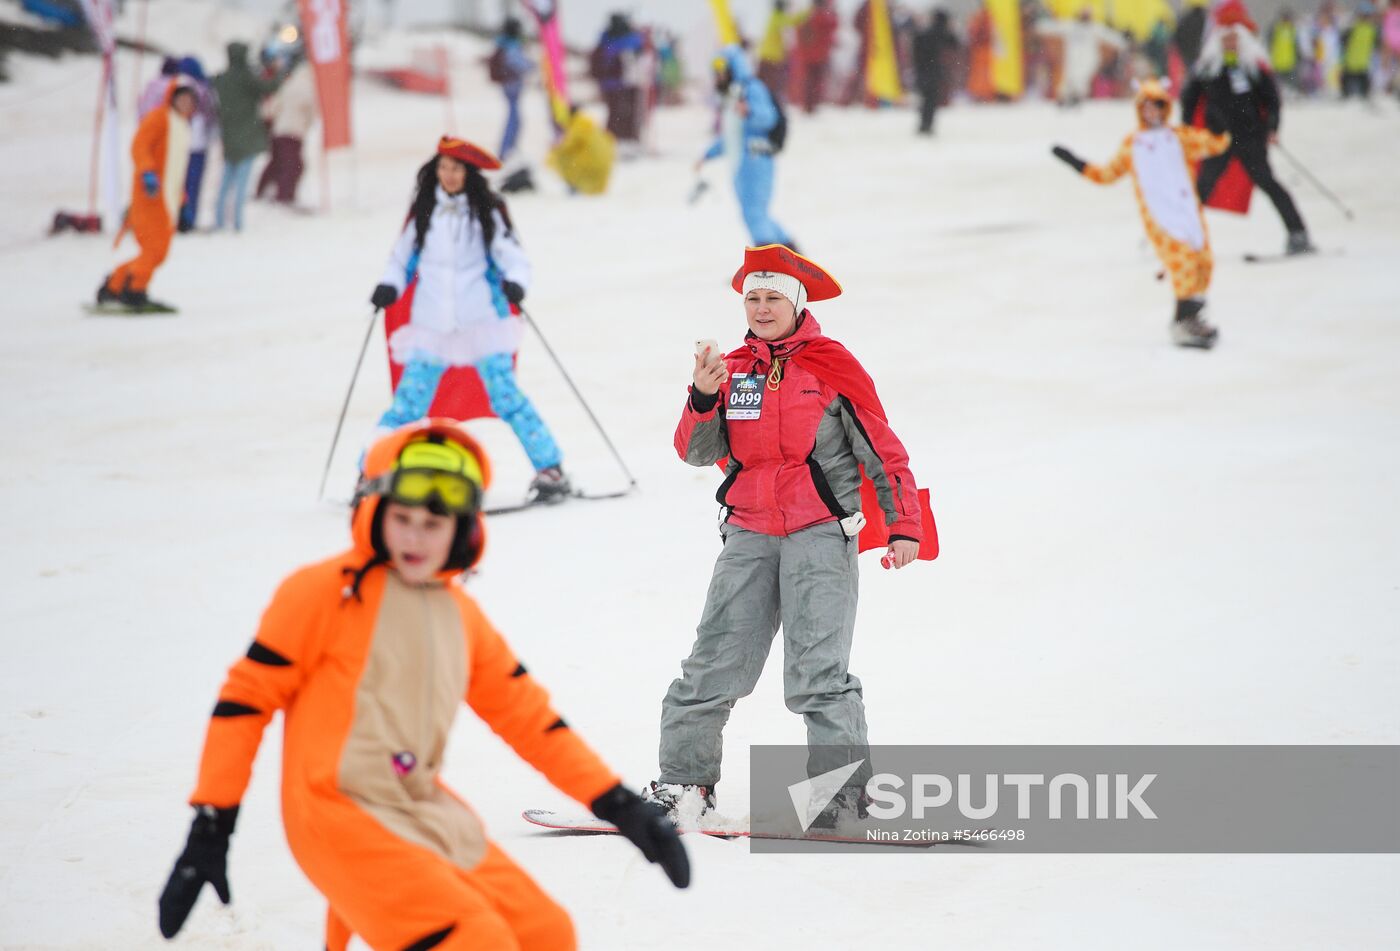 BoogelWoogel-2018 alpine carnival in Sochi